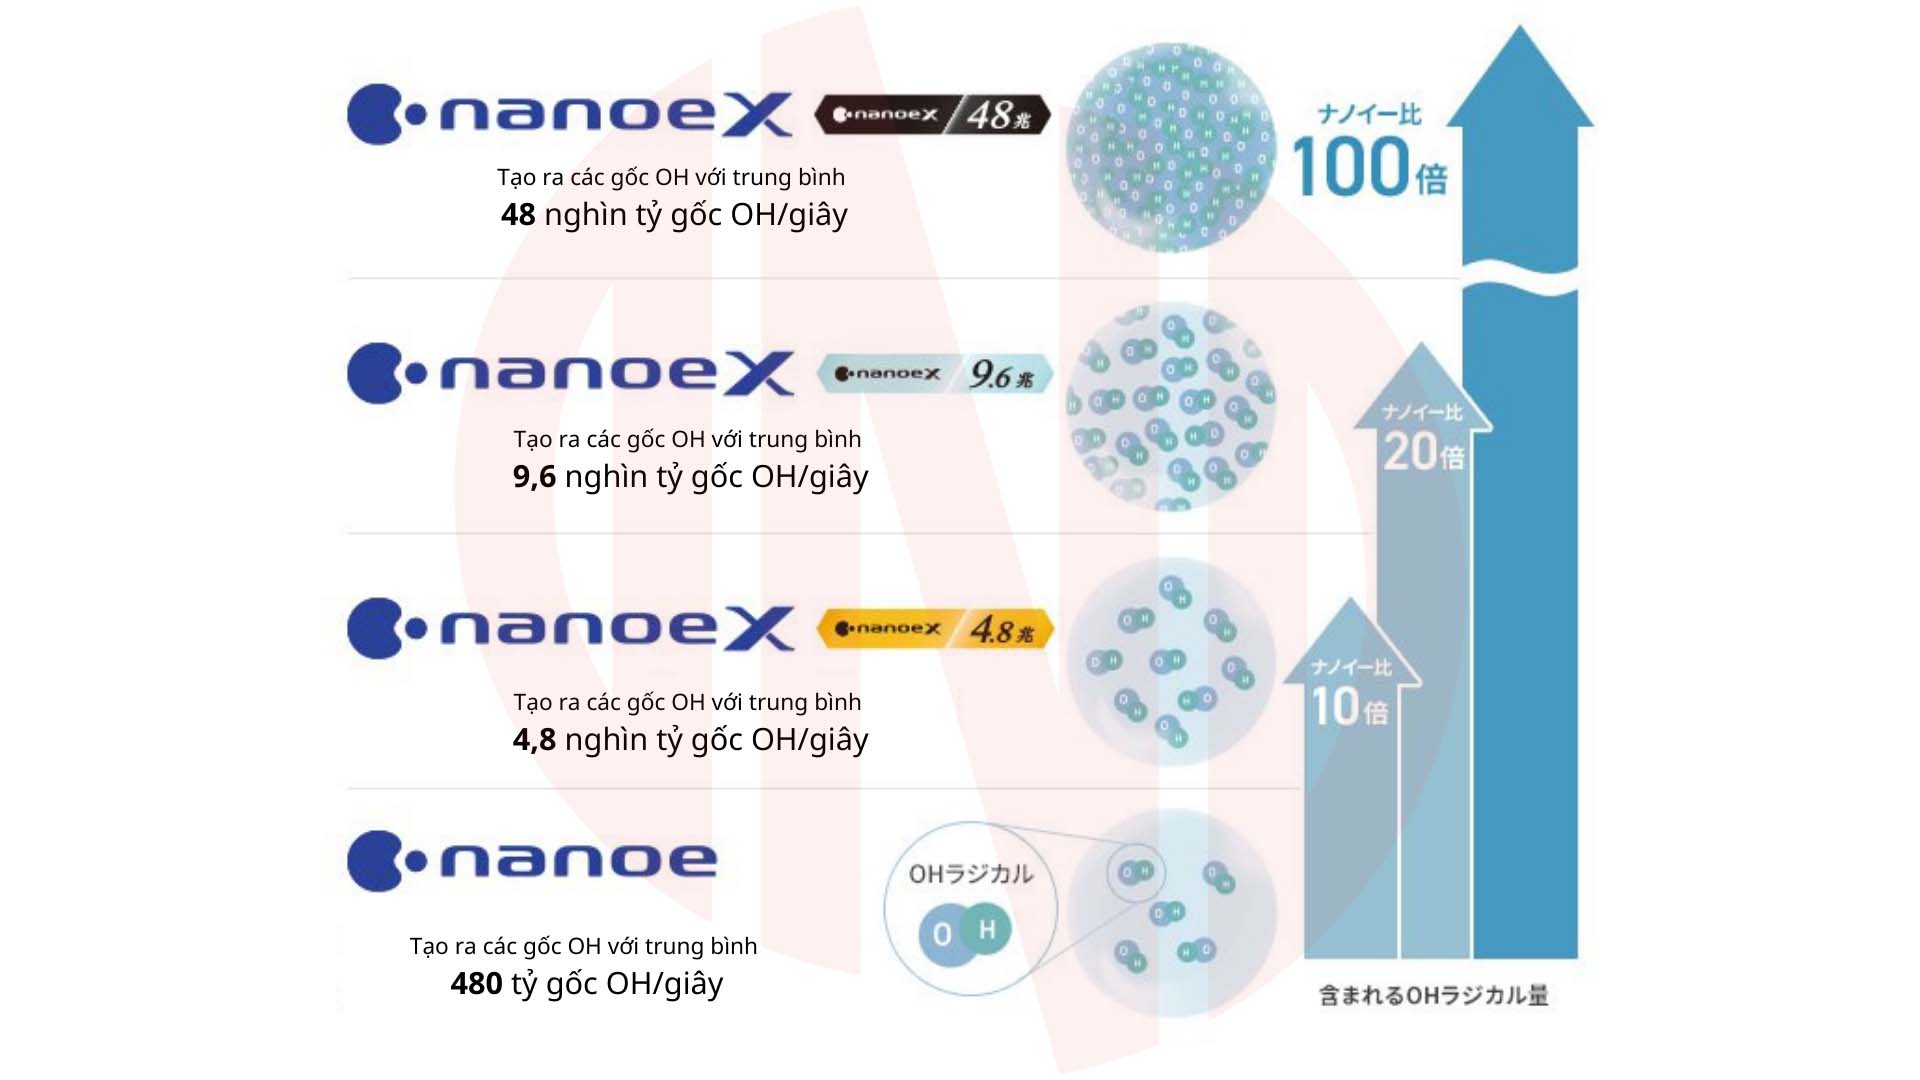 Nanoe - Nanoe X là gì?